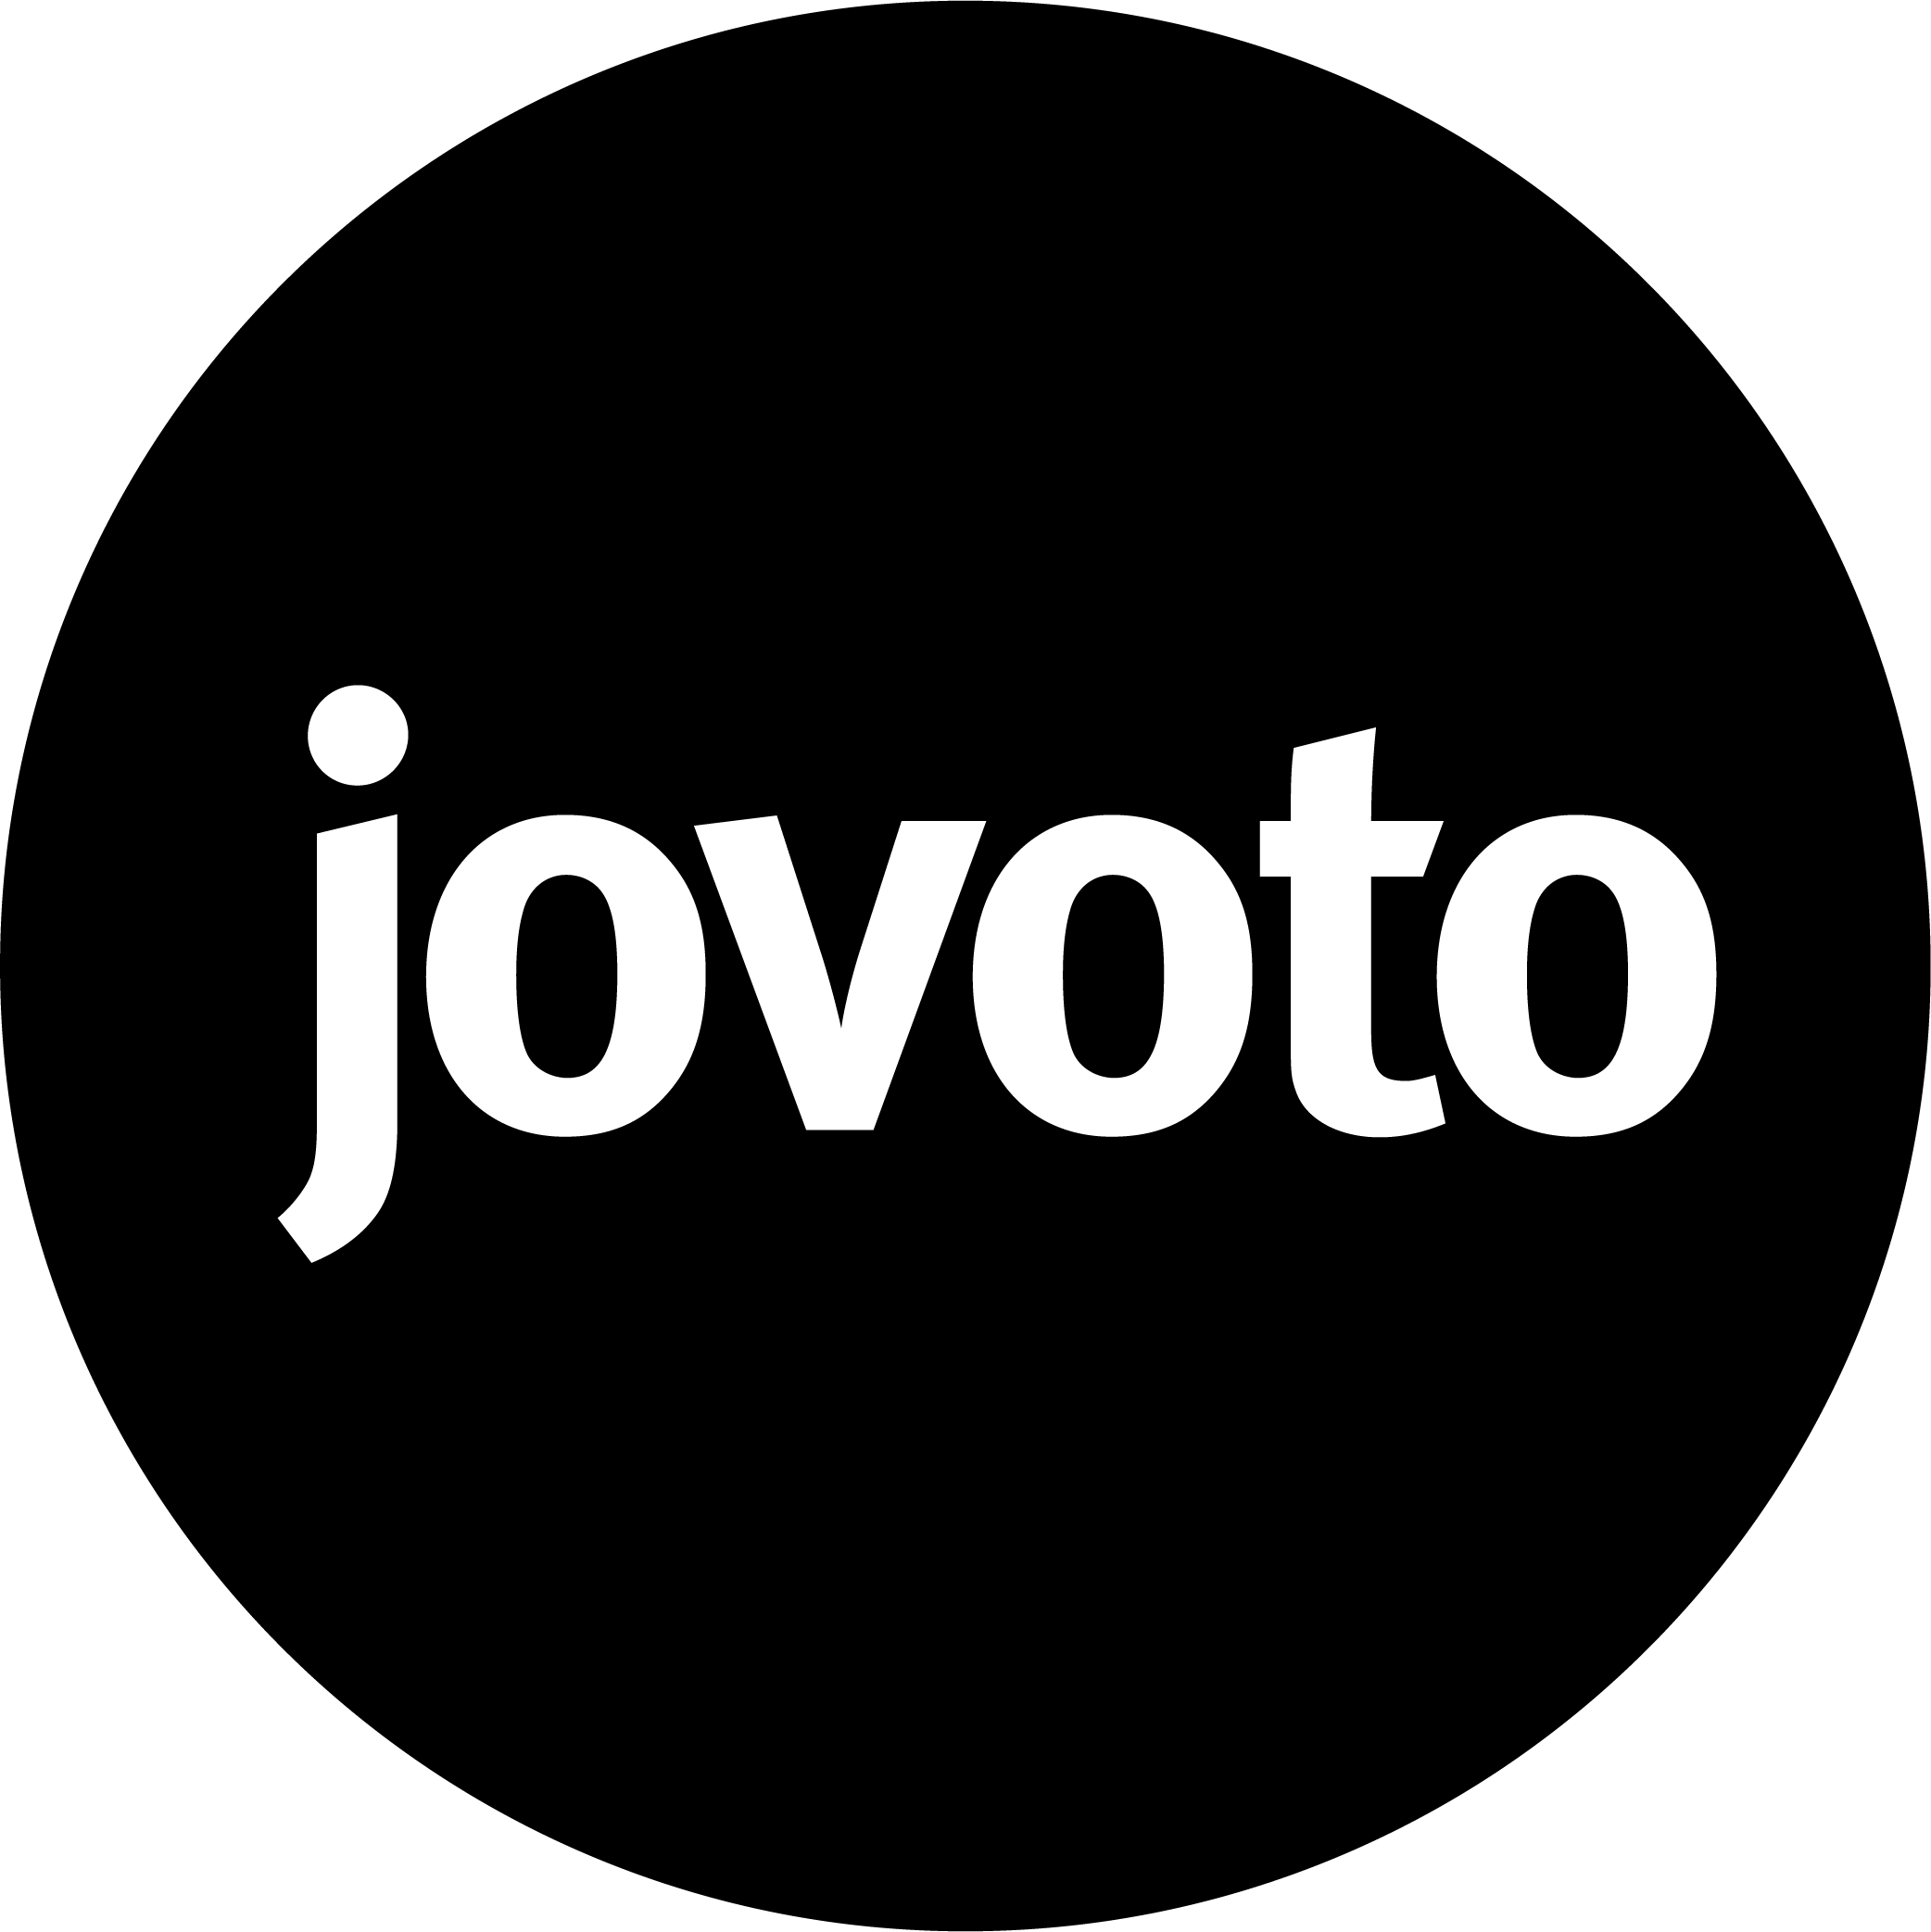 jovoto’s logo